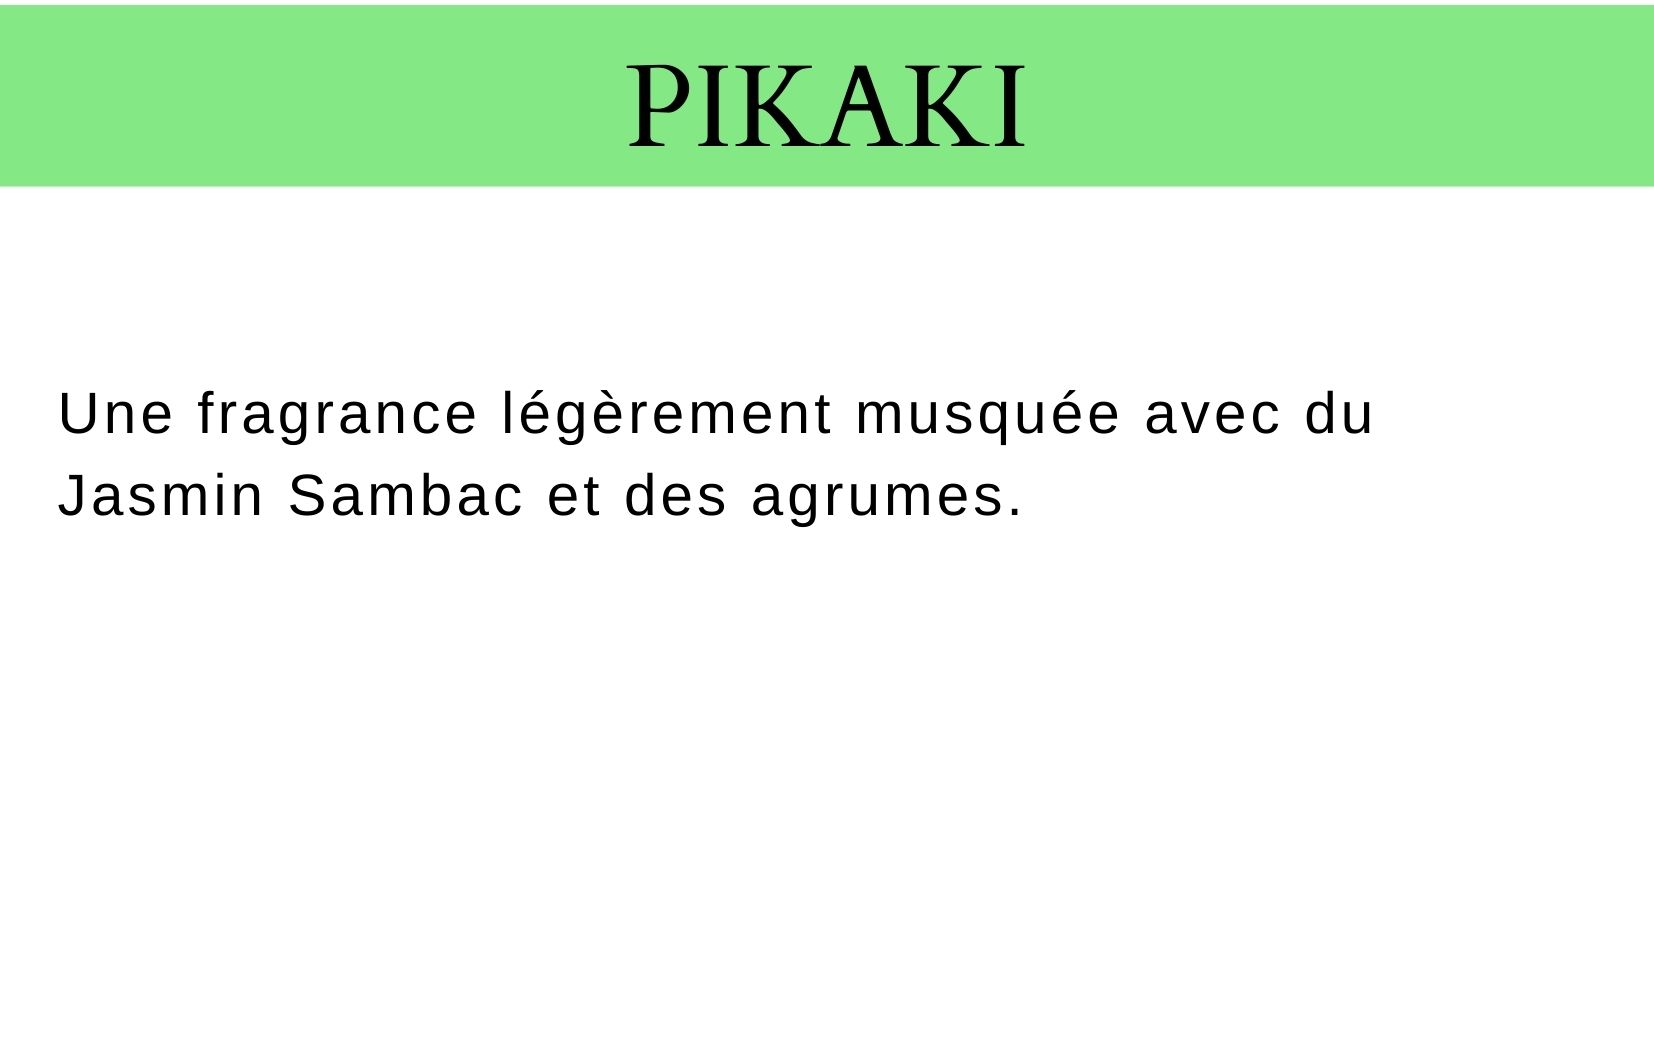 Description parfum pikaki